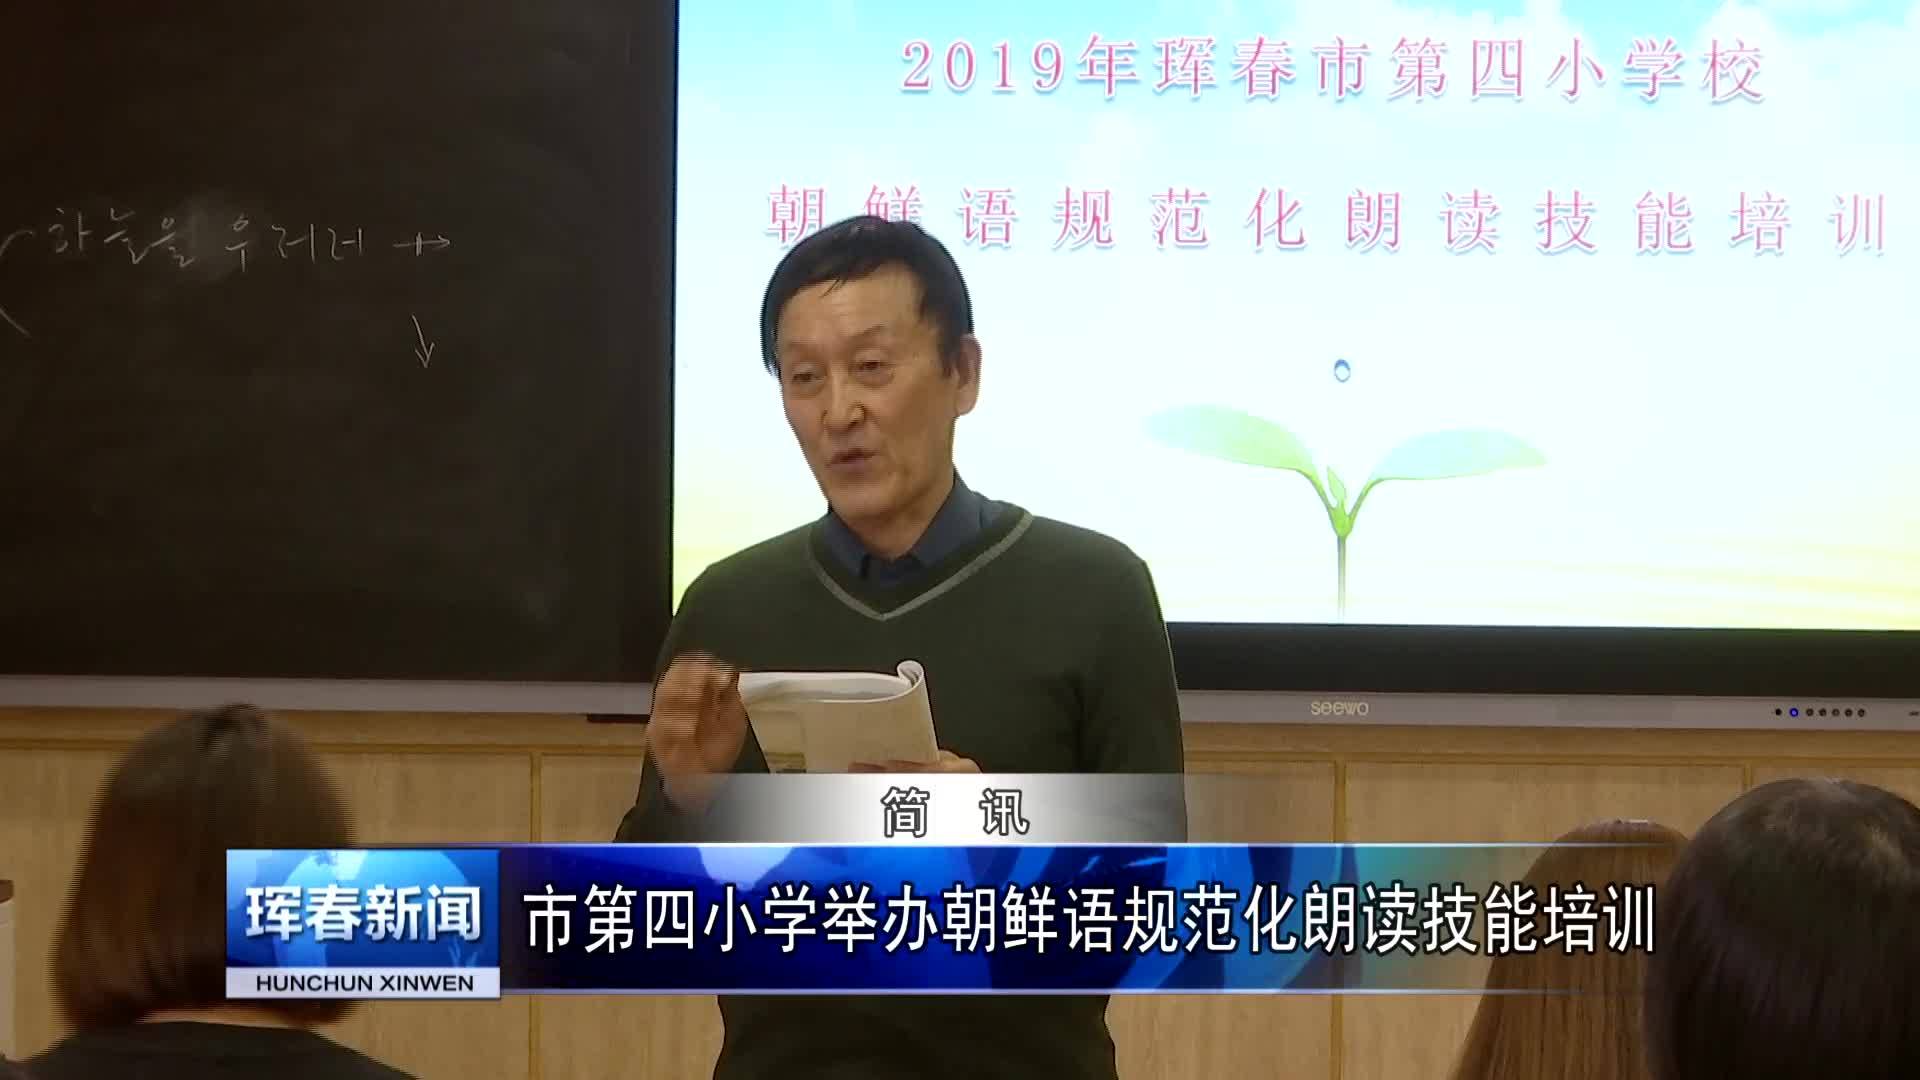 市第四小学举办朝鲜语规范化朗读技能培训